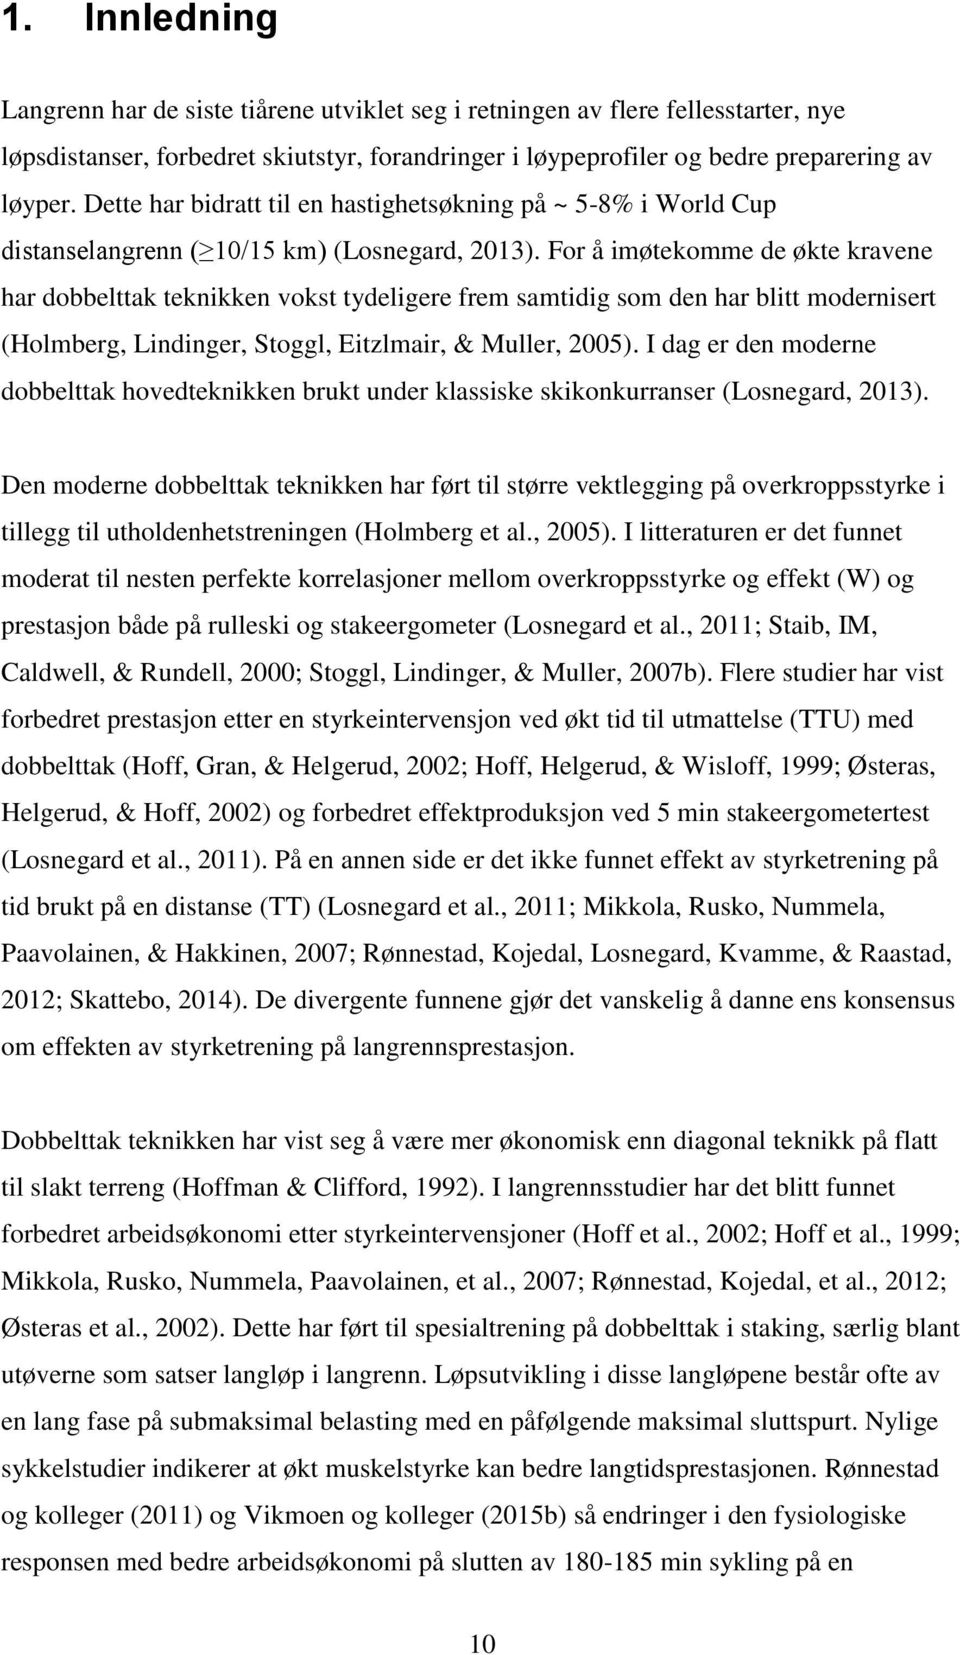 For å imøtekomme de økte kravene har dobbelttak teknikken vokst tydeligere frem samtidig som den har blitt modernisert (Holmberg, Lindinger, Stoggl, Eitzlmair, & Muller, 2005).